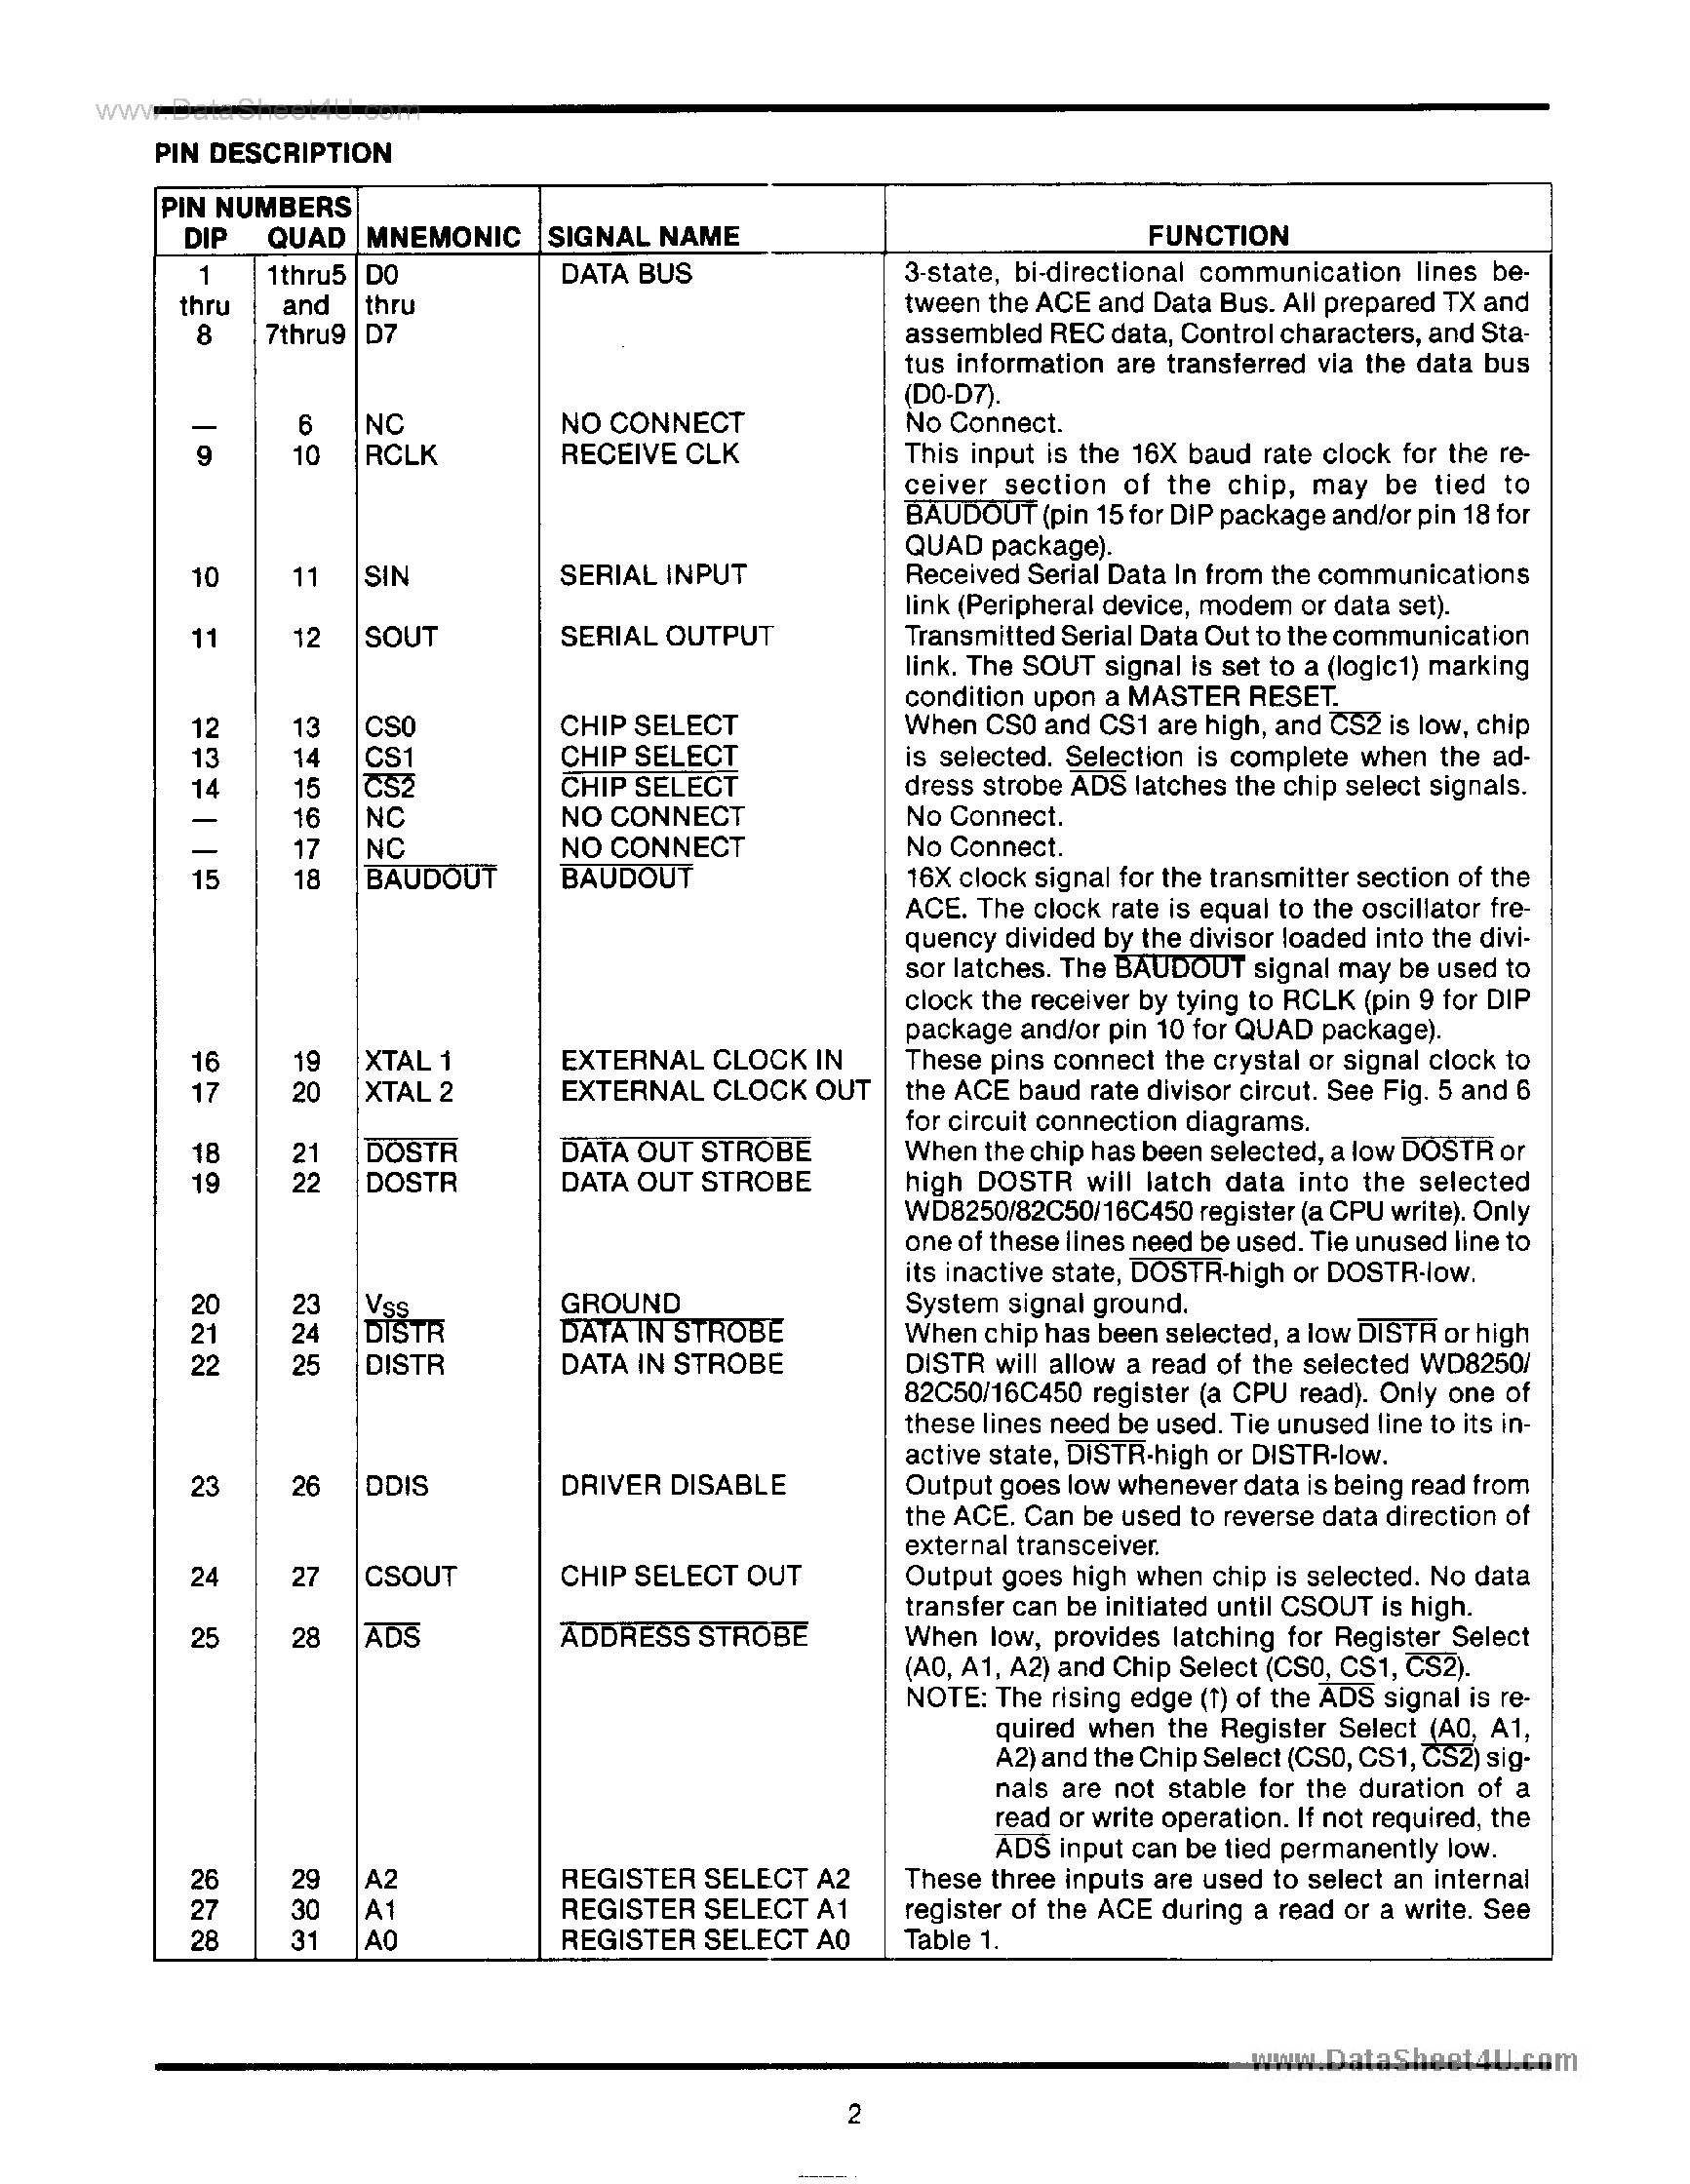 Datasheet WD16C450 - ACE page 2